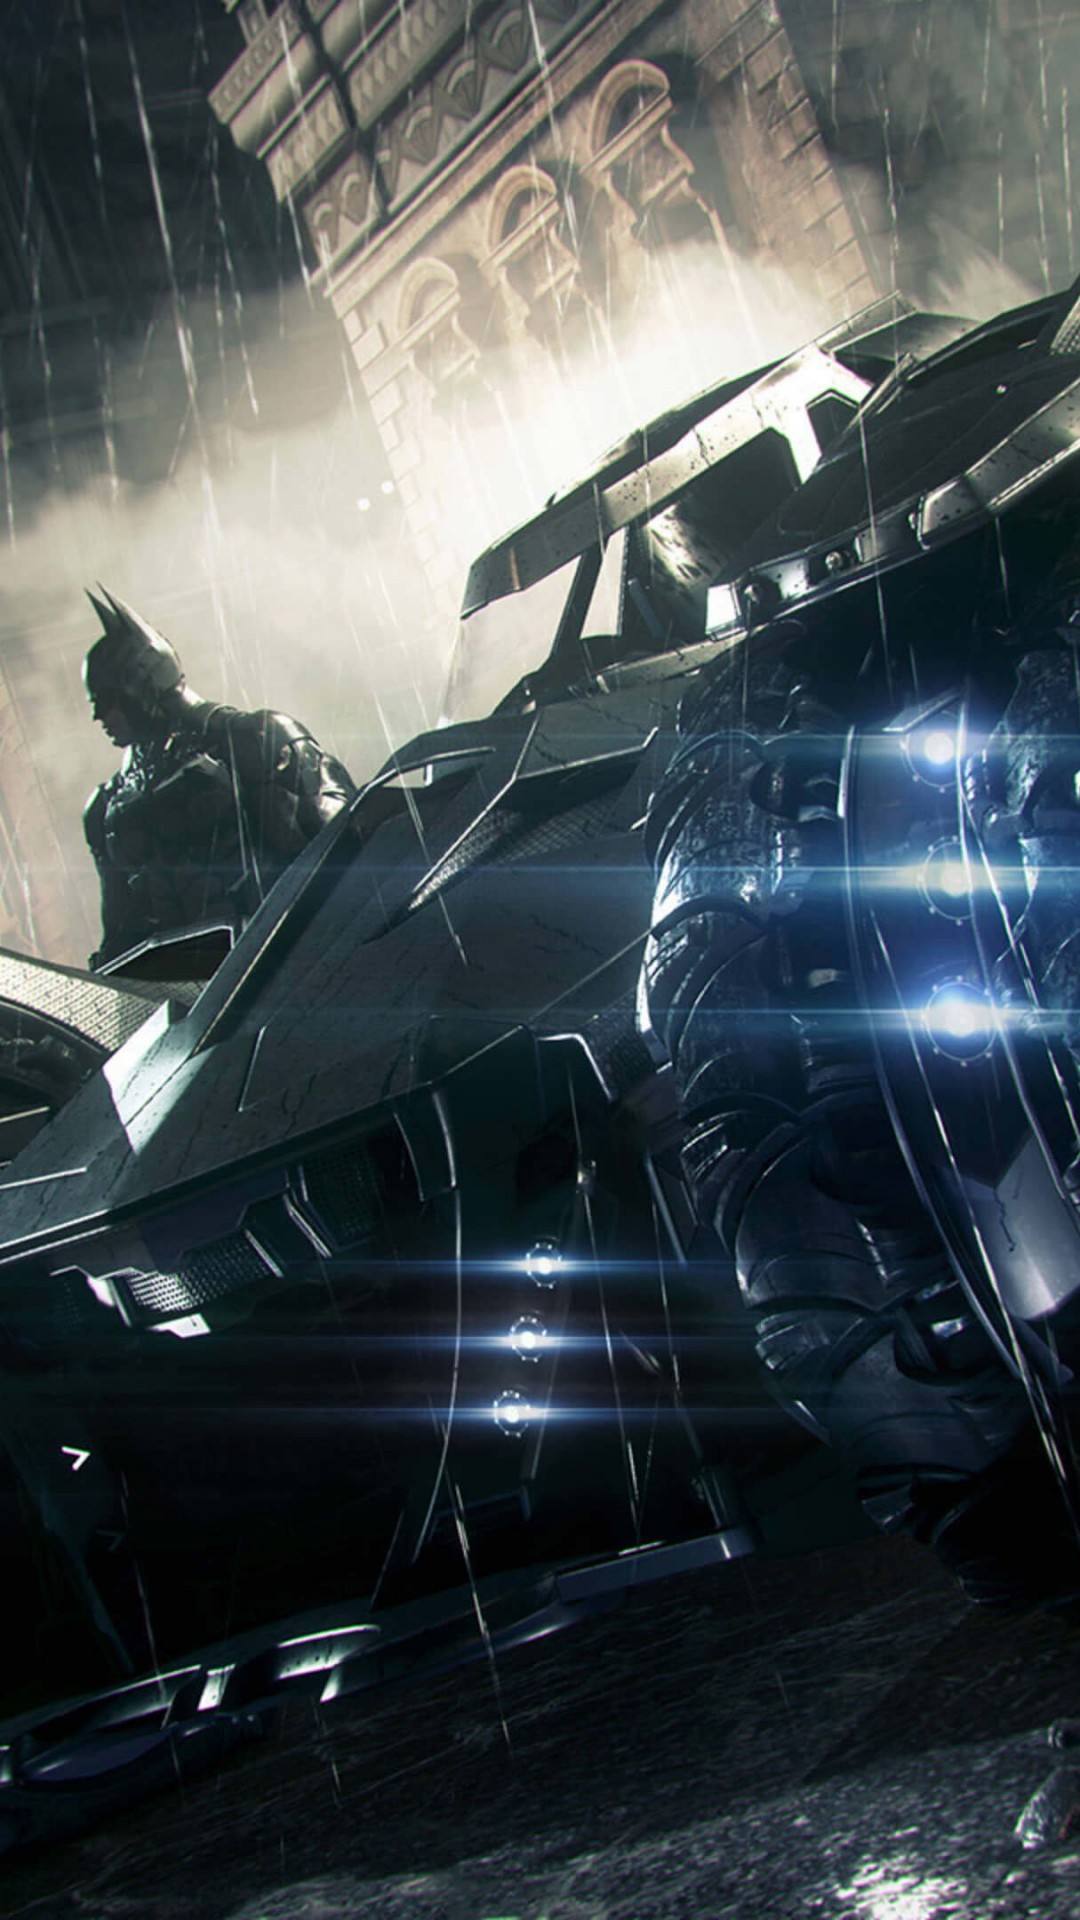 Batmobile - Batman Arkham Knight Wallpaper for LG G2